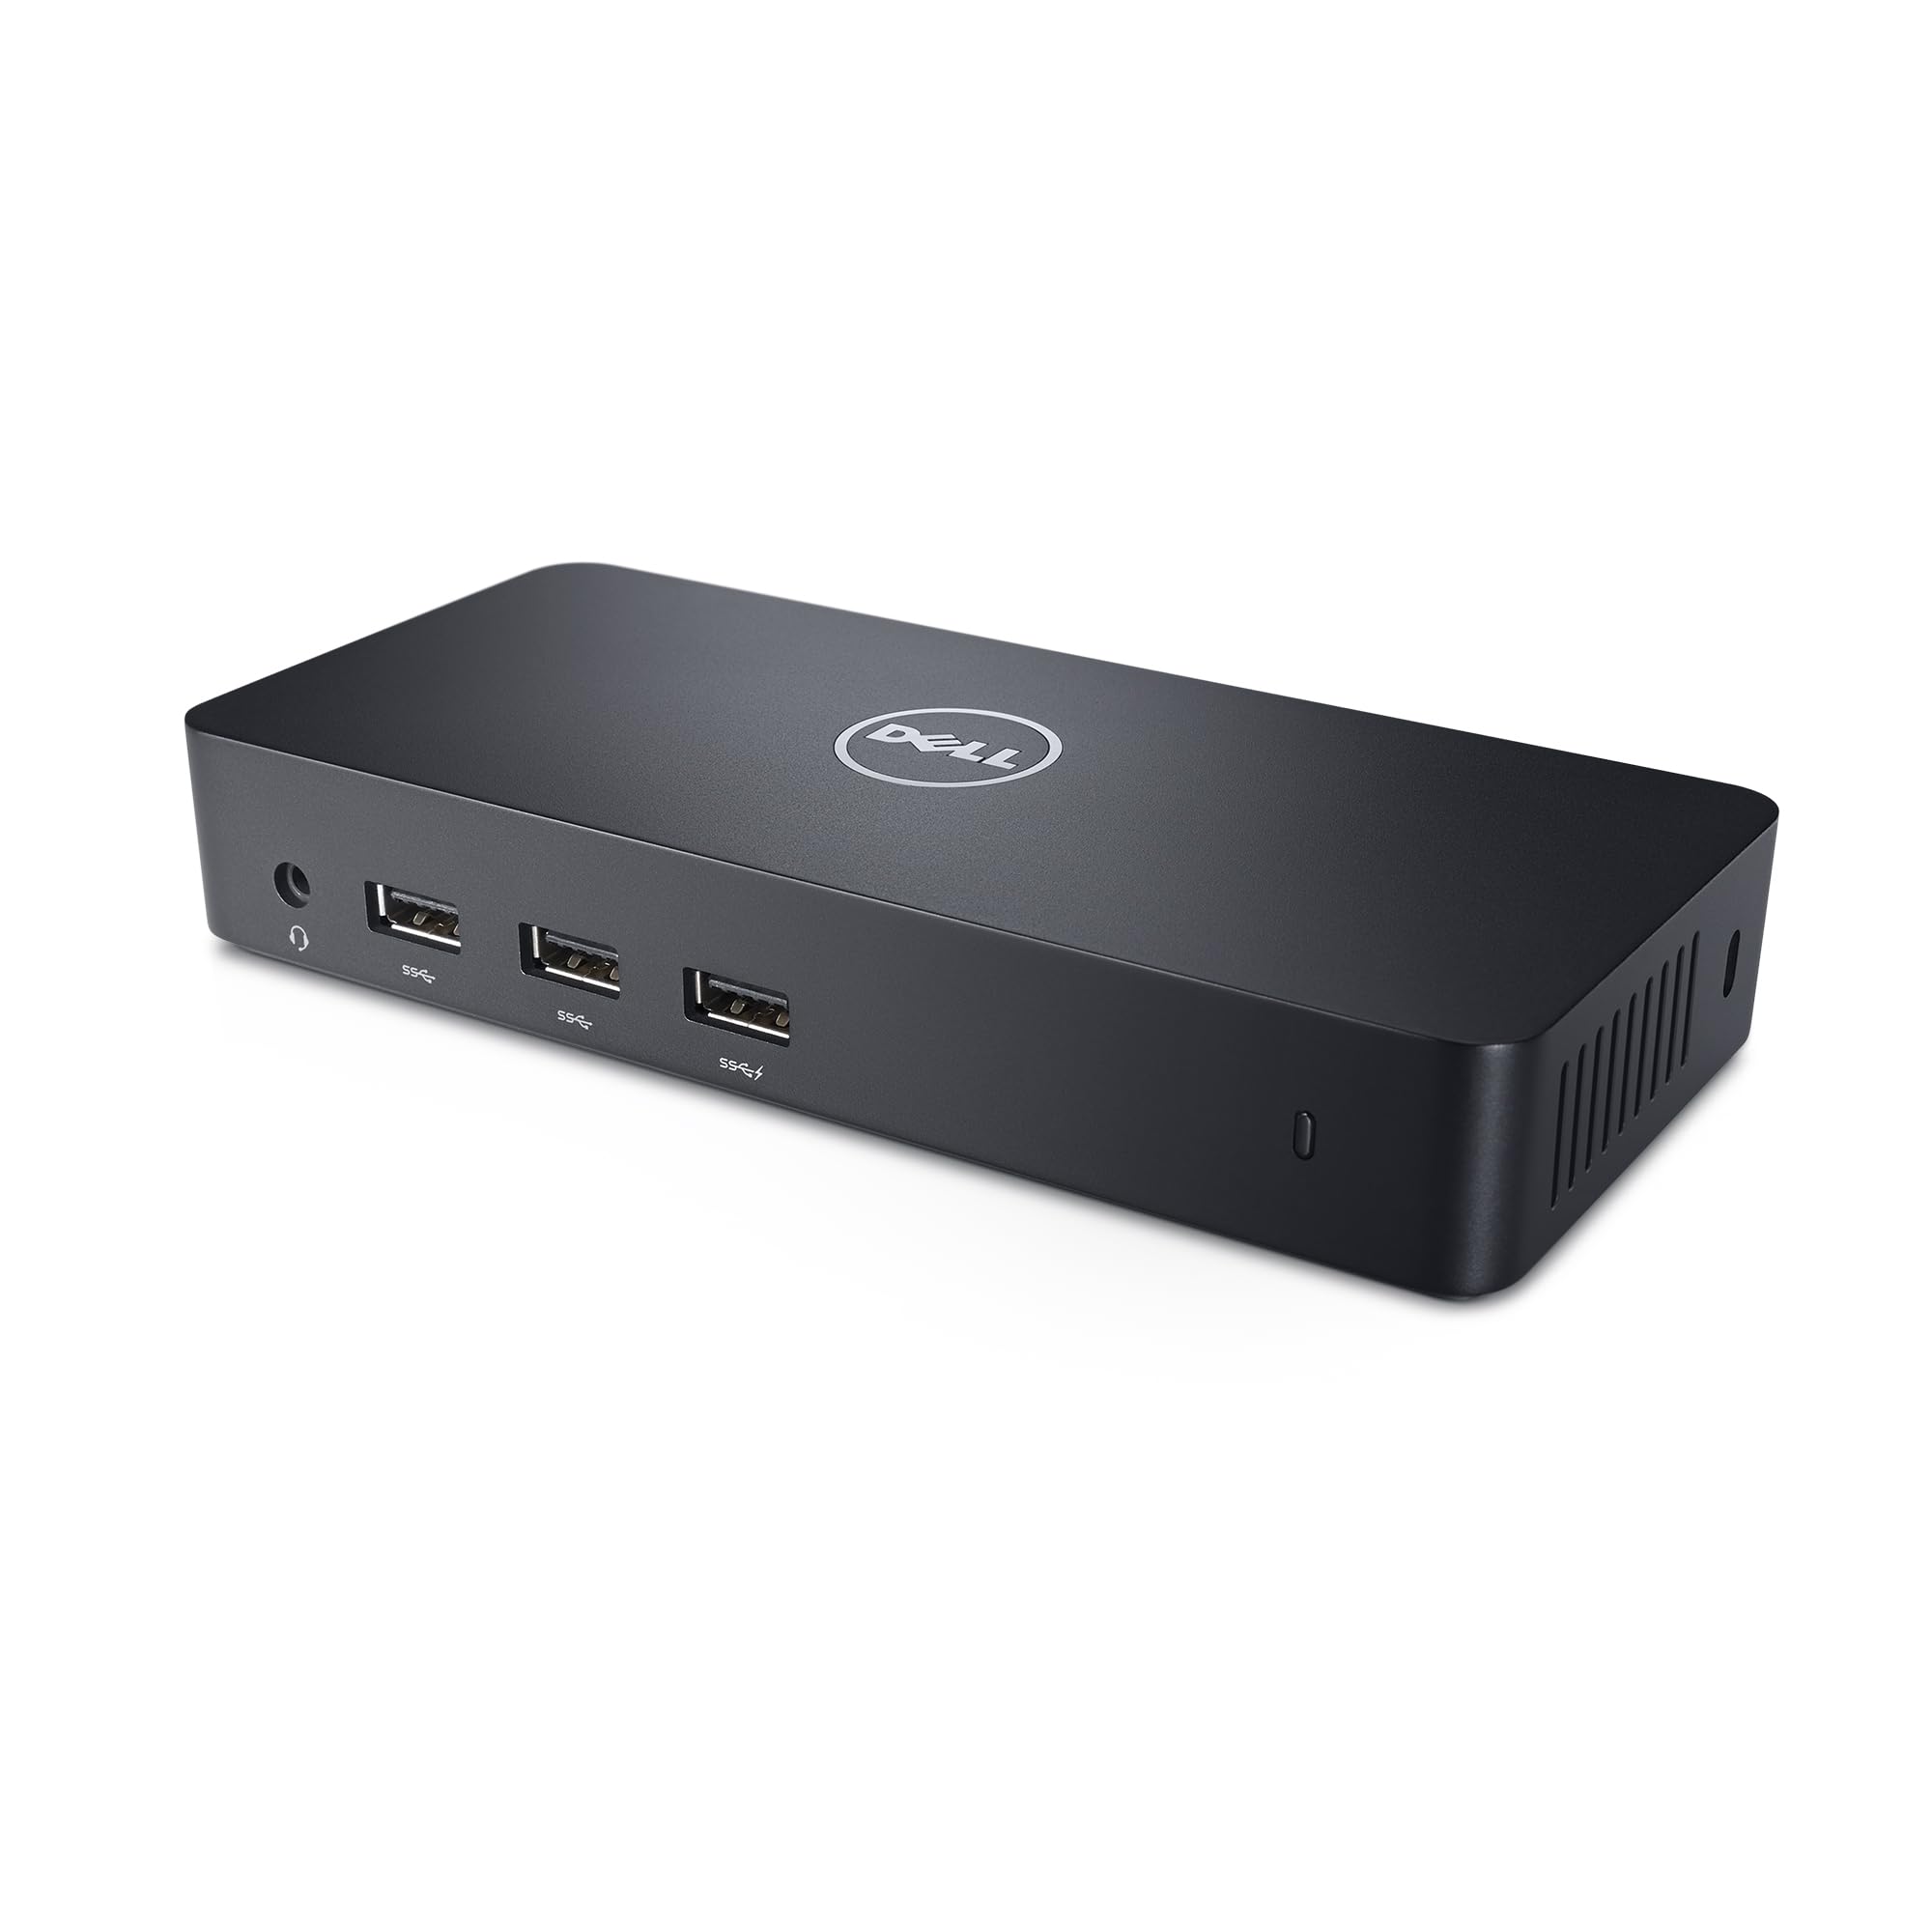 $94.99: Dell D3100 USB 3.0 Ultra HD/4K Triple Display Docking Station